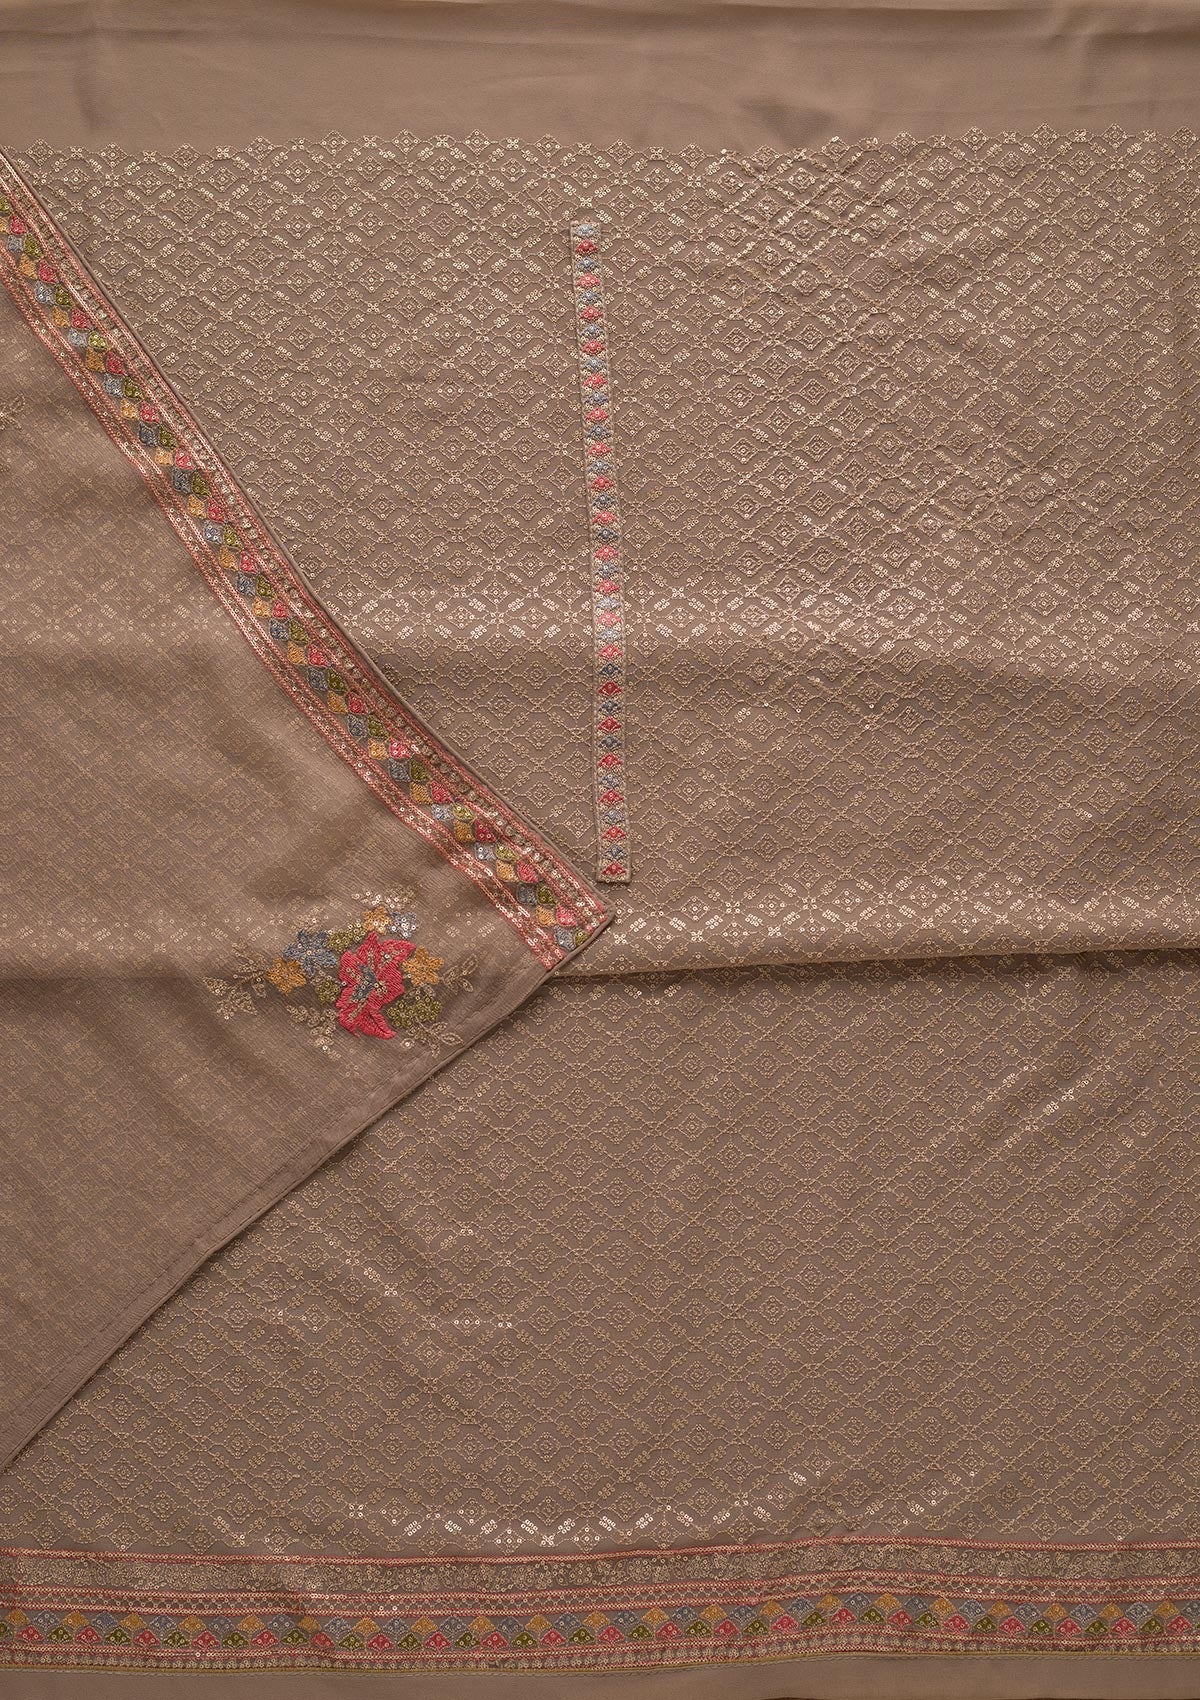 Light Grey Threadwork Georgette Unstitched Salwar Suit-Koskii